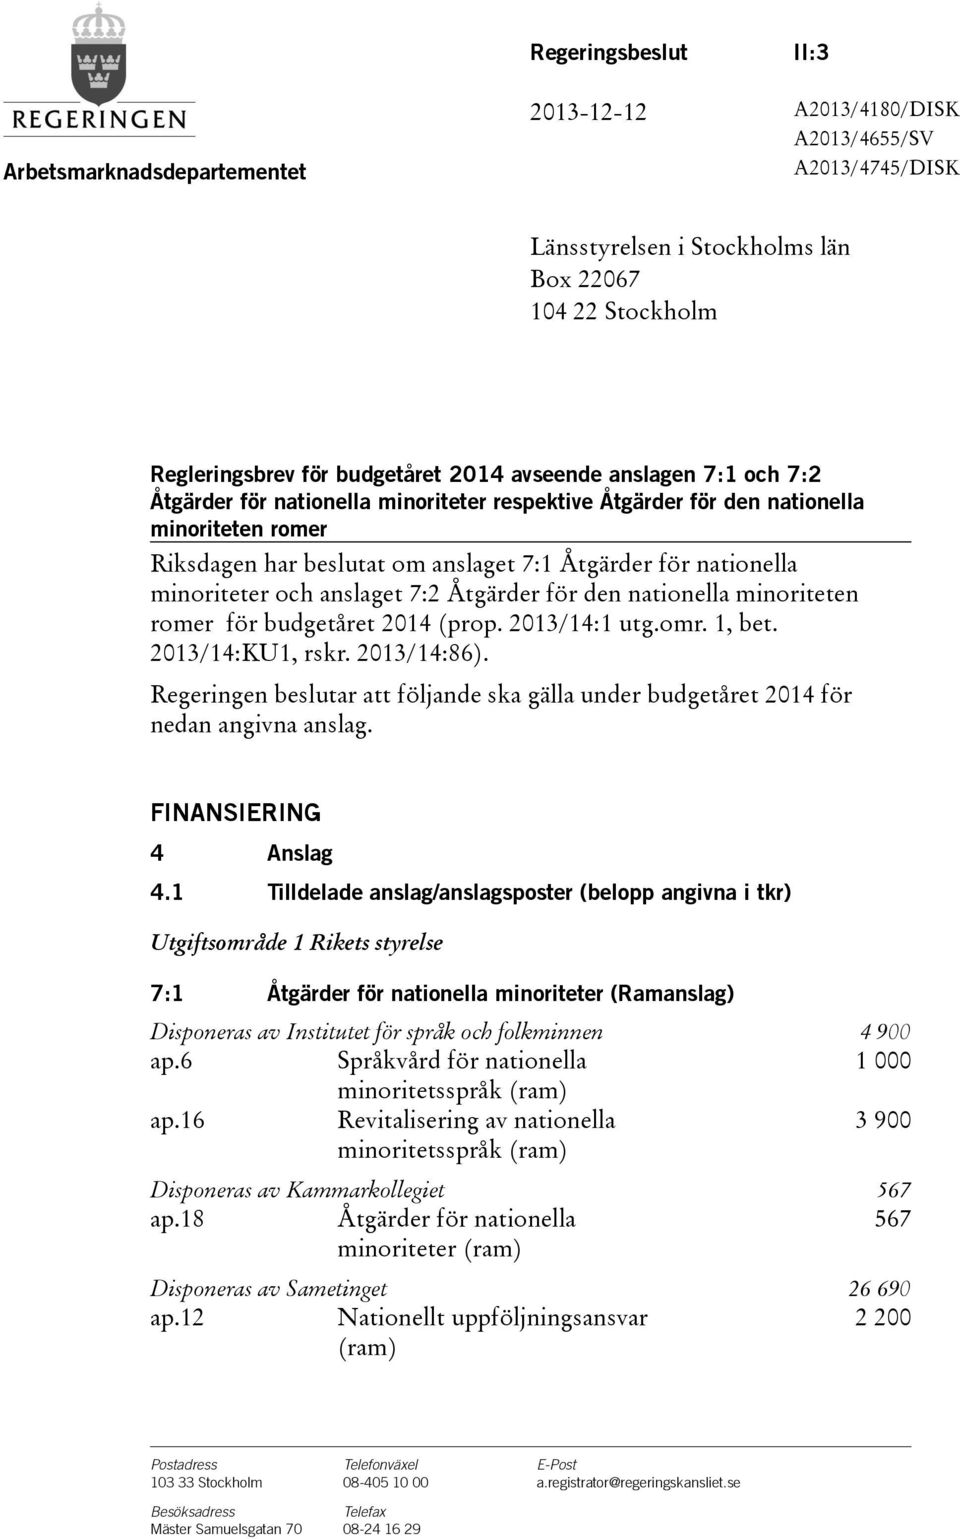 och anslaget 7:2 Åtgärder för den nationella minoriteten romer för budgetåret 2014(prop. 2013/14:1 utg.omr. 1, bet. 2013/14:KU1, rskr. 2013/14:86).